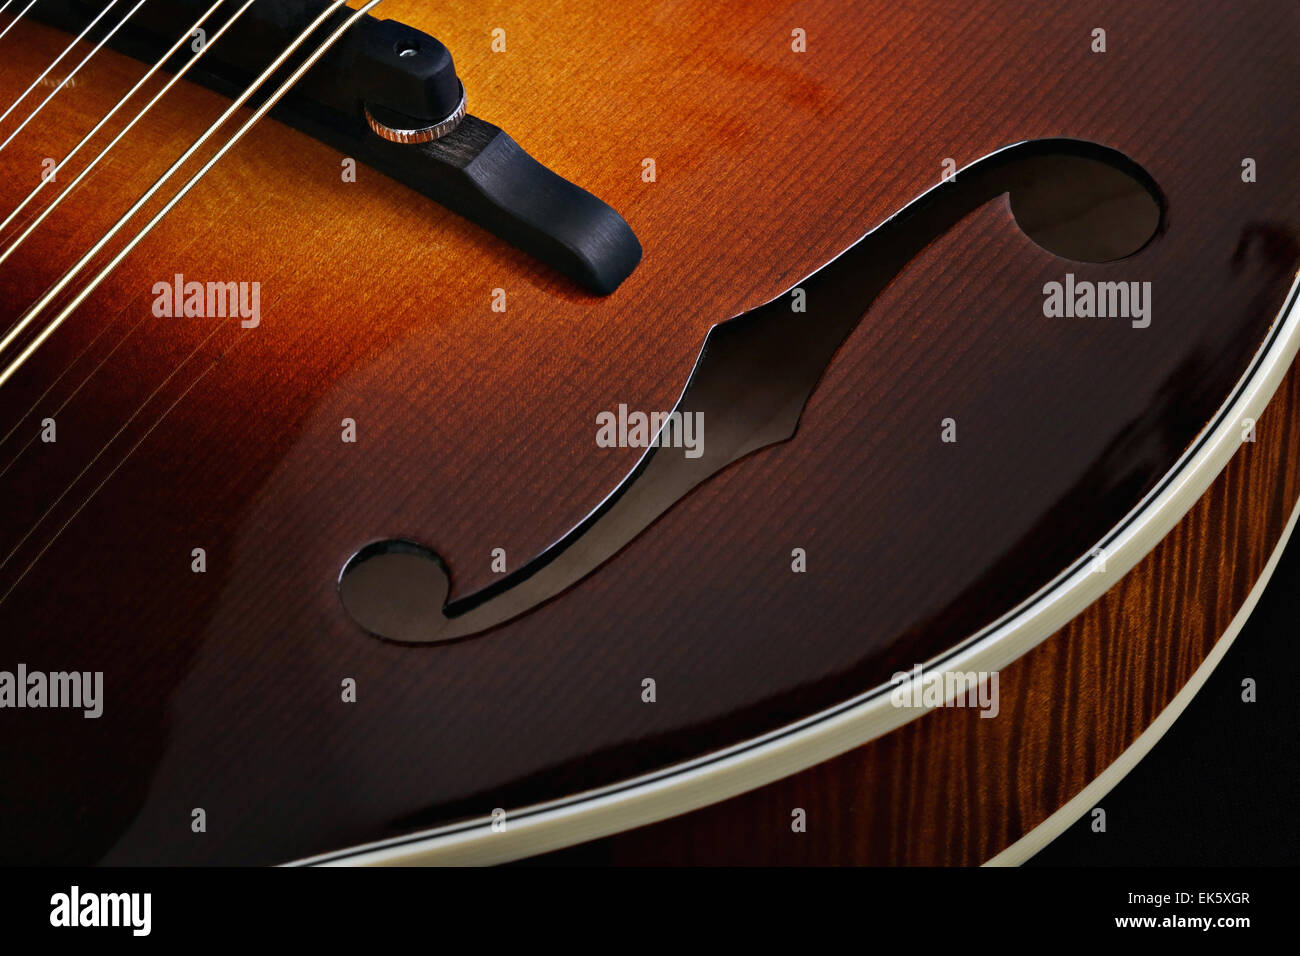 Mandolin isolated on black background Stock Photo